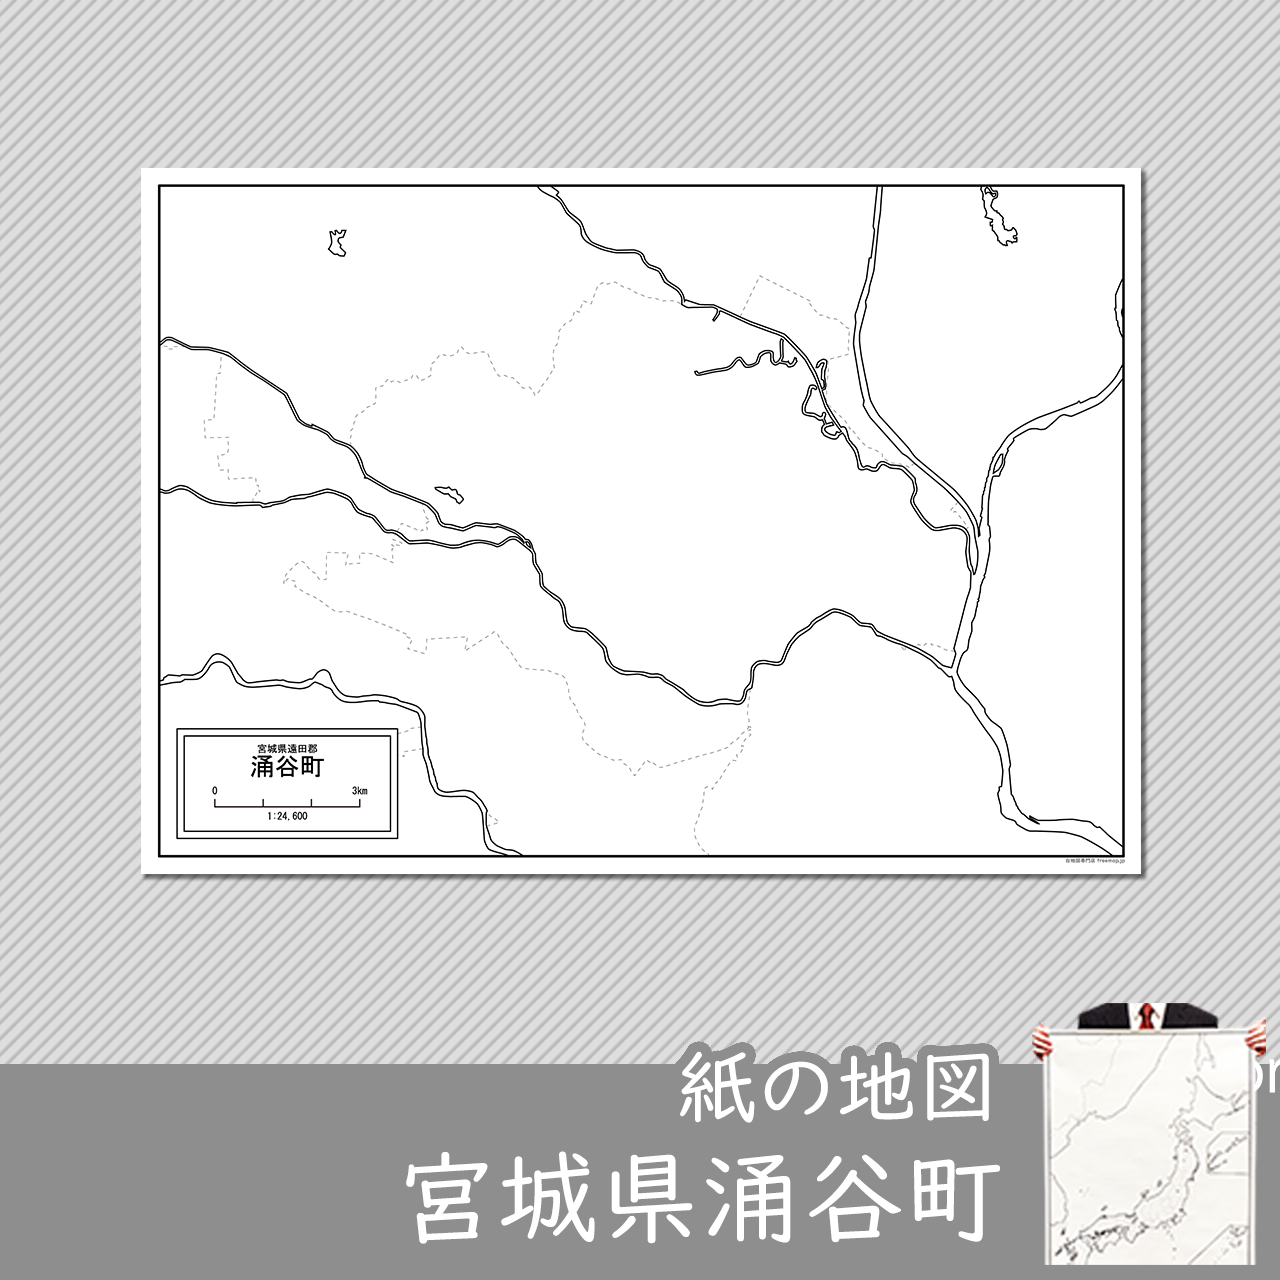 涌谷町の紙の白地図のサムネイル